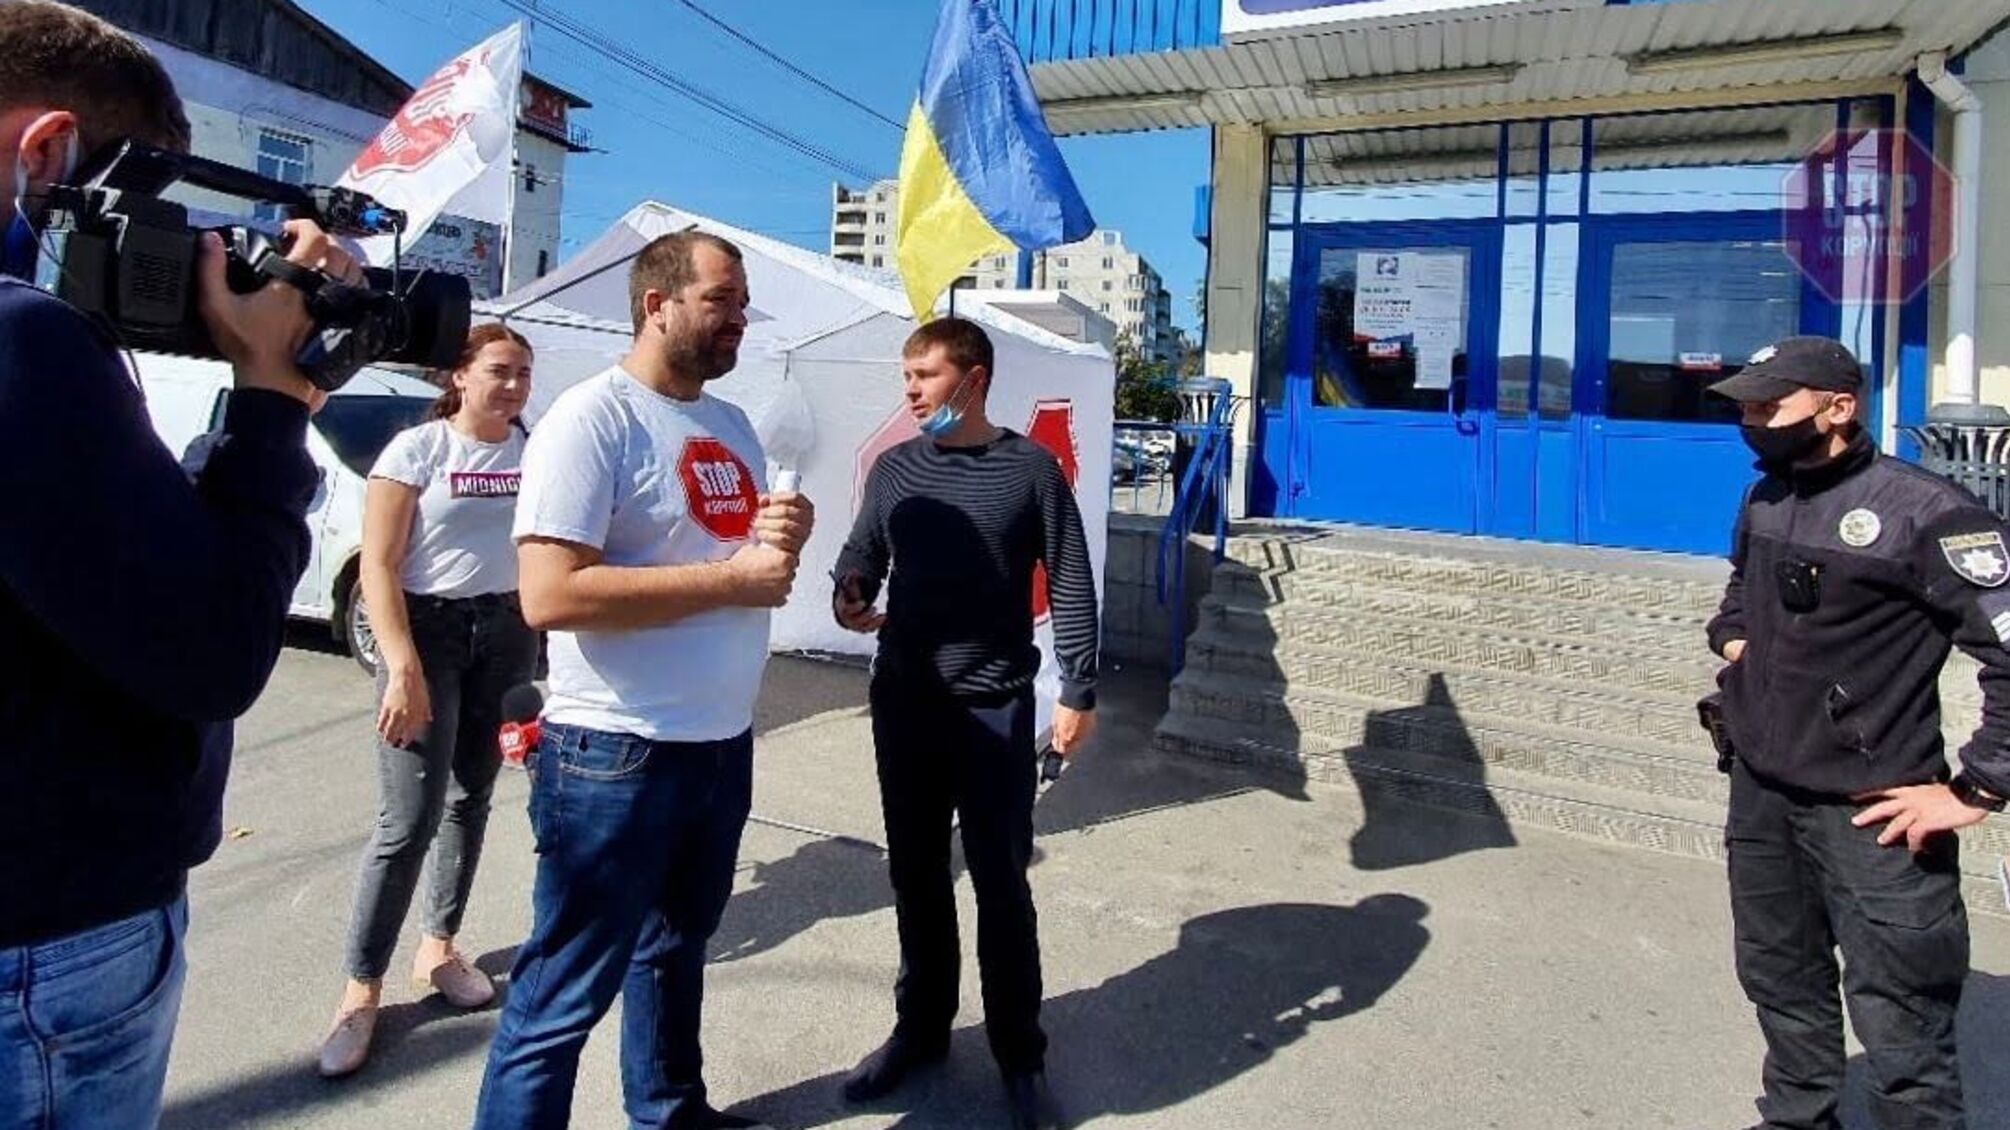 Гречкосійство-2020: на Київщині розпочався збір інформації щодо порушень виборчого законодавства